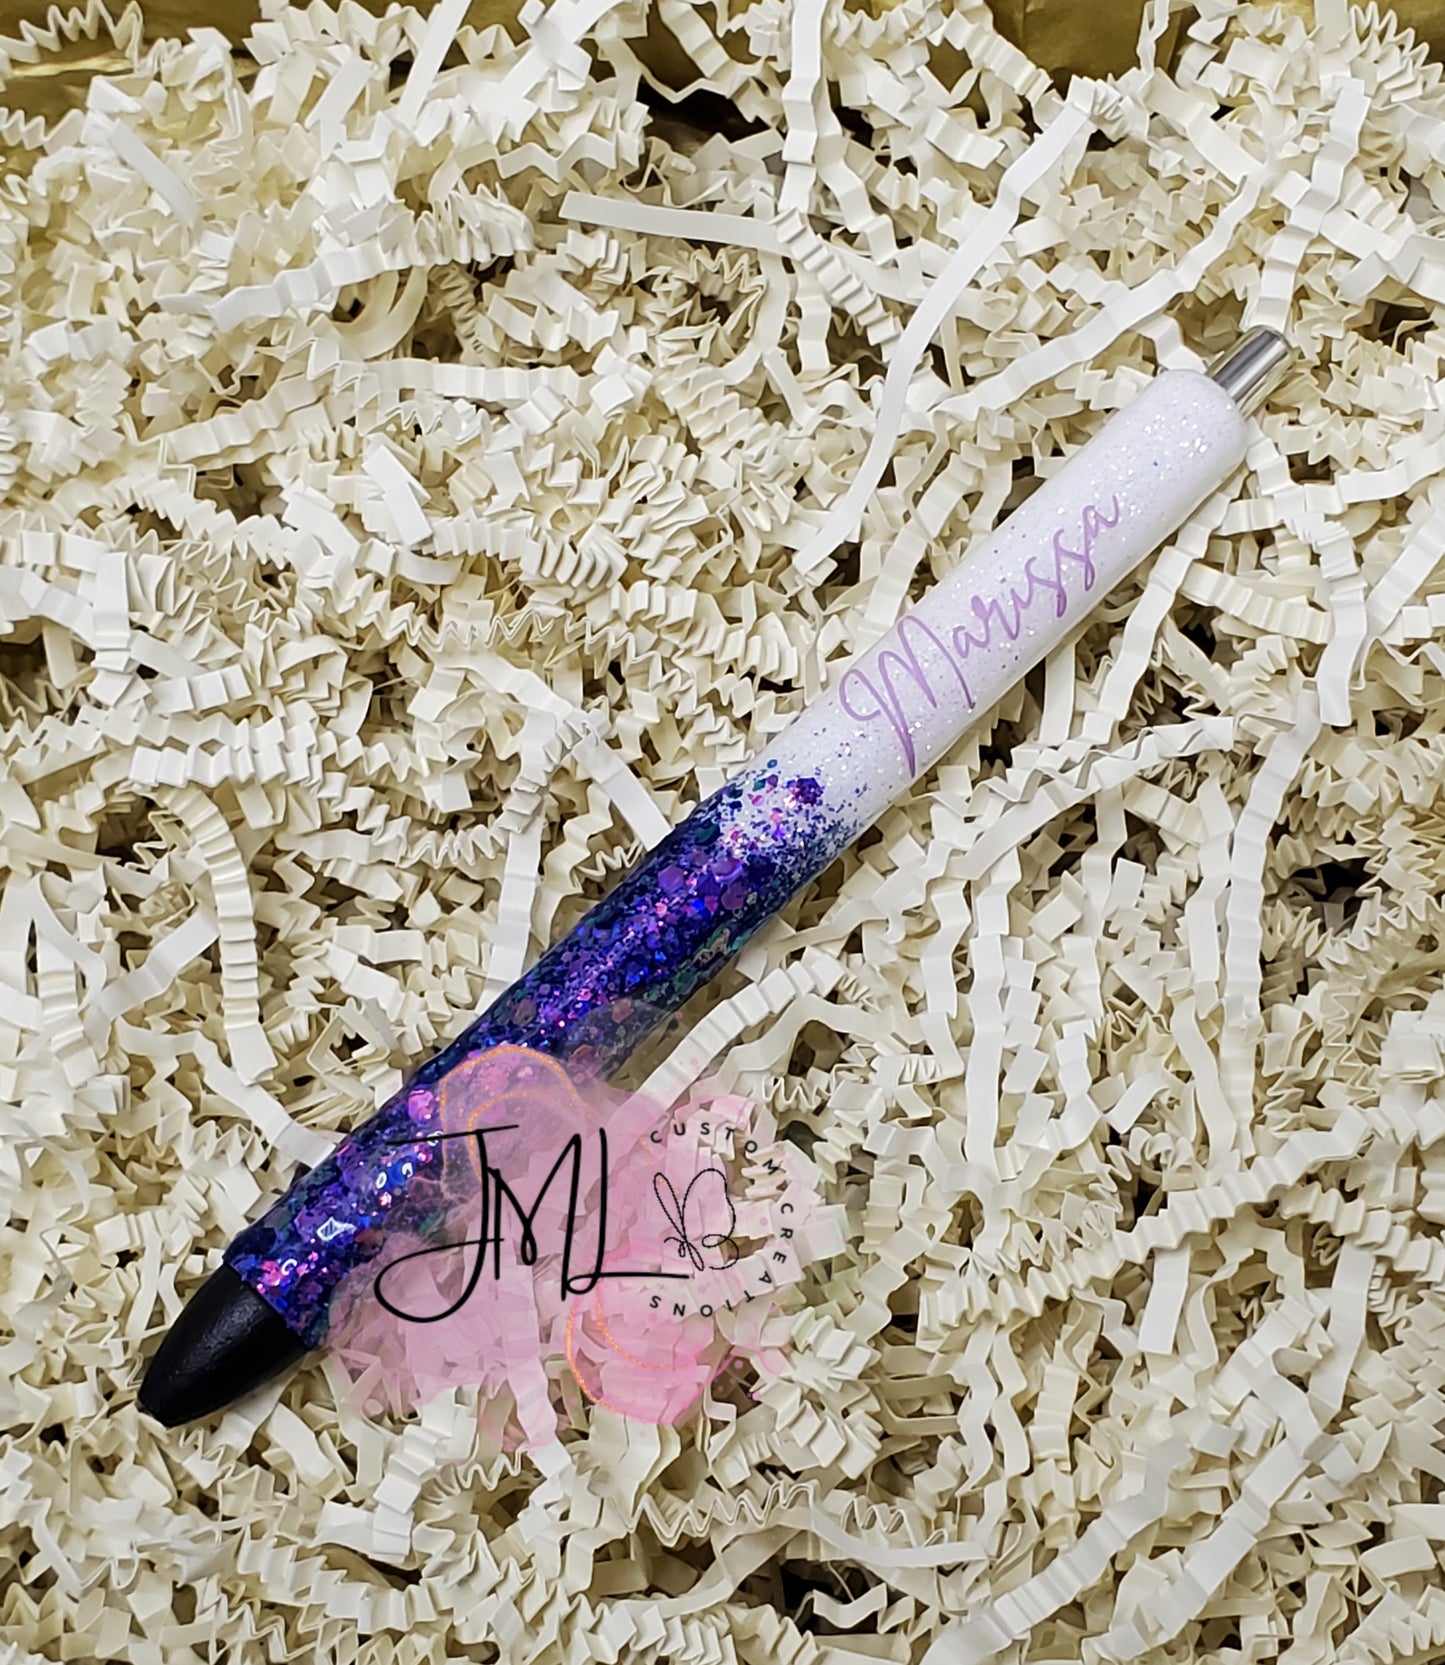 Ombre Glitter Pens